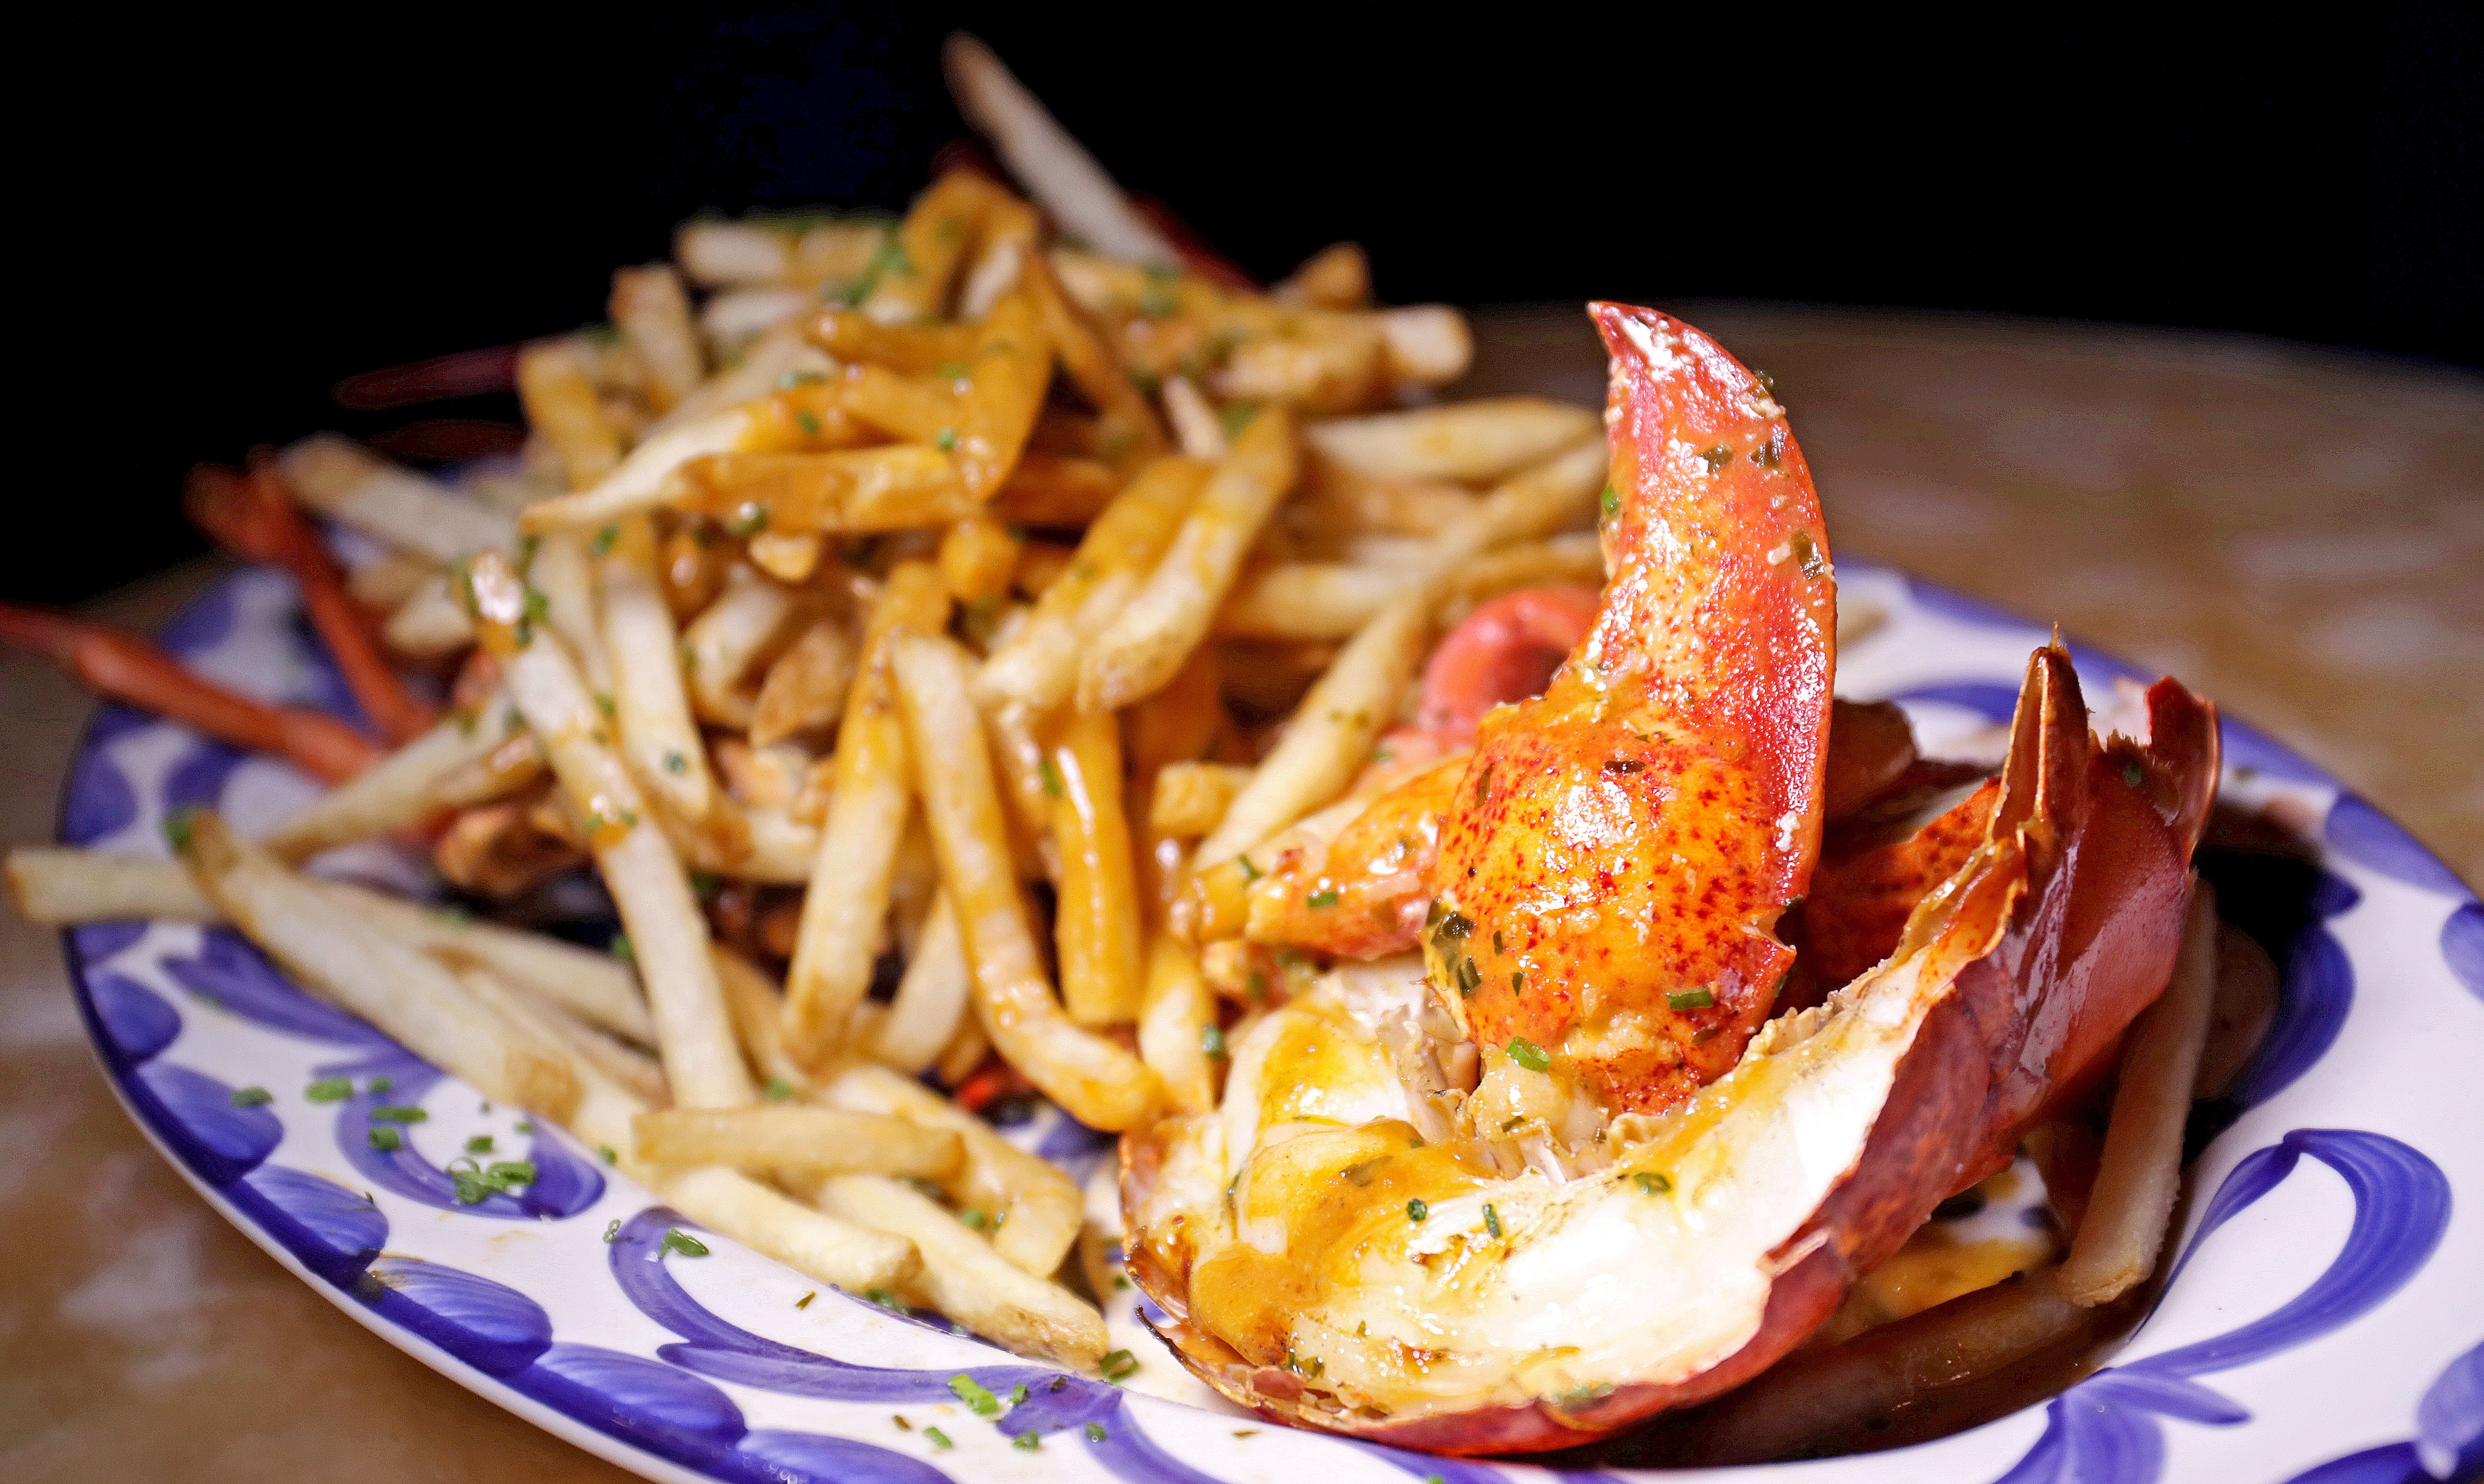 Grilled lobster frites